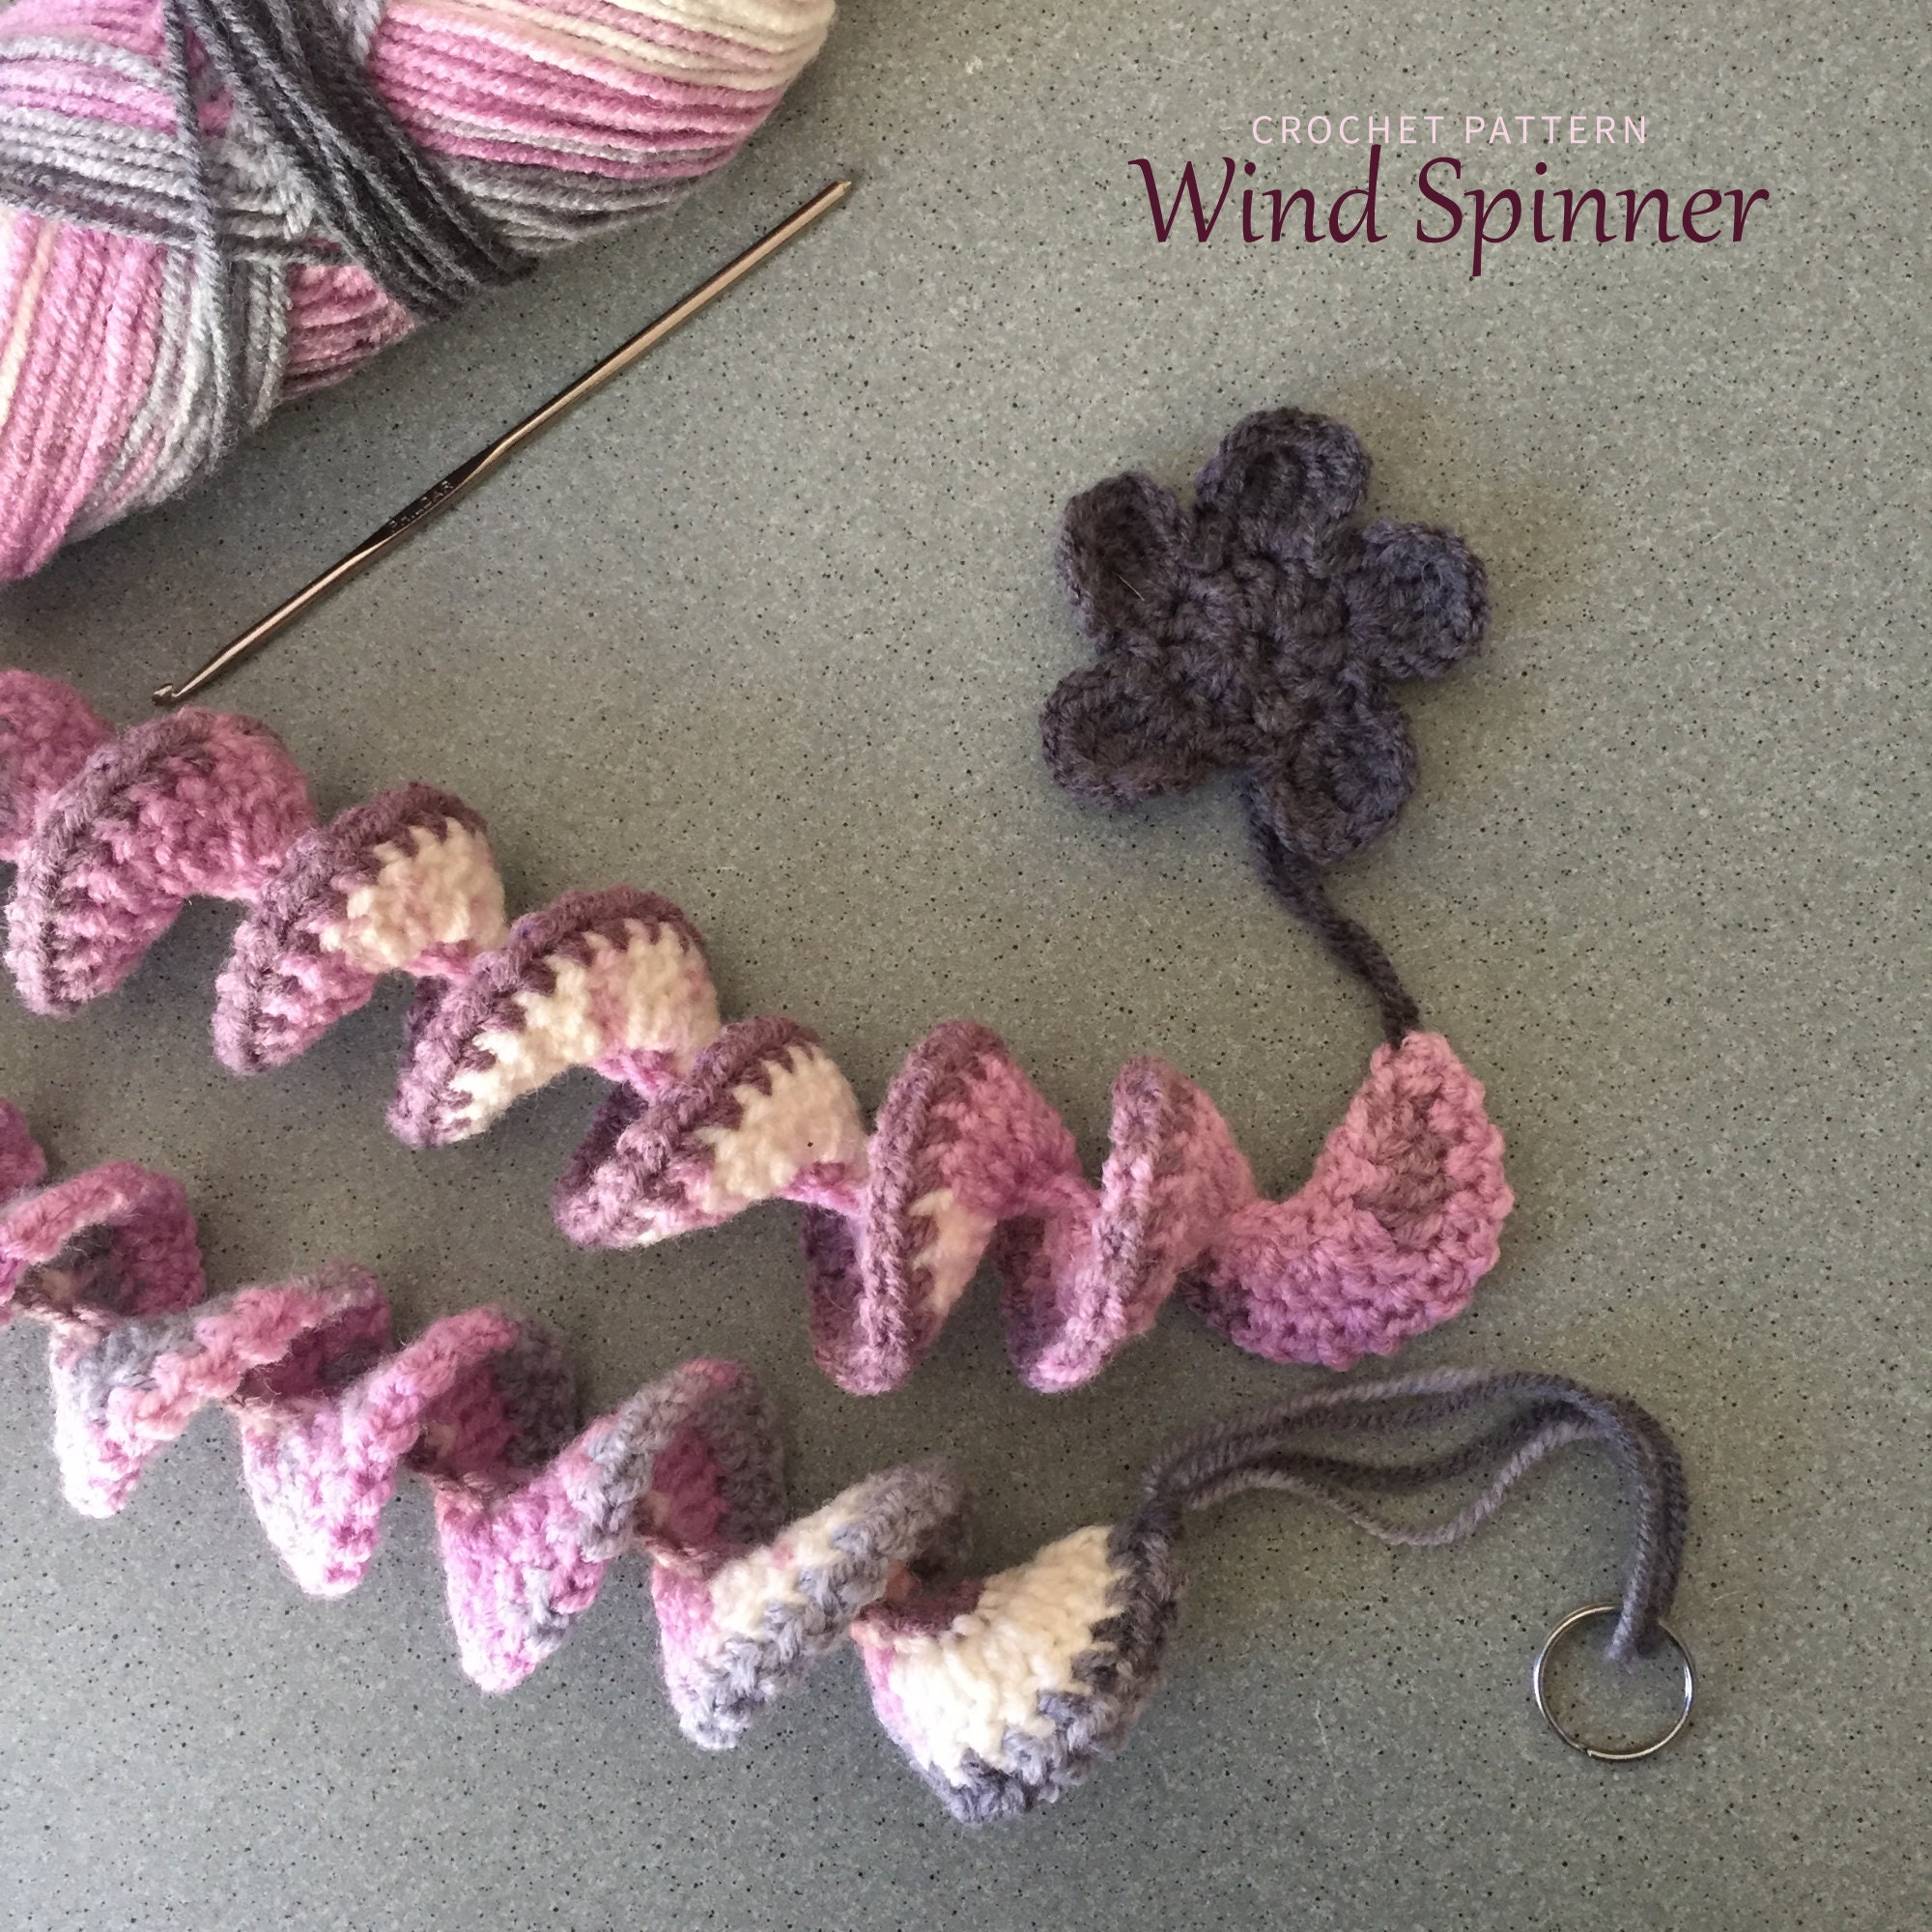 Crochet Windspinner Pattern FREE Written Pattern and Tips